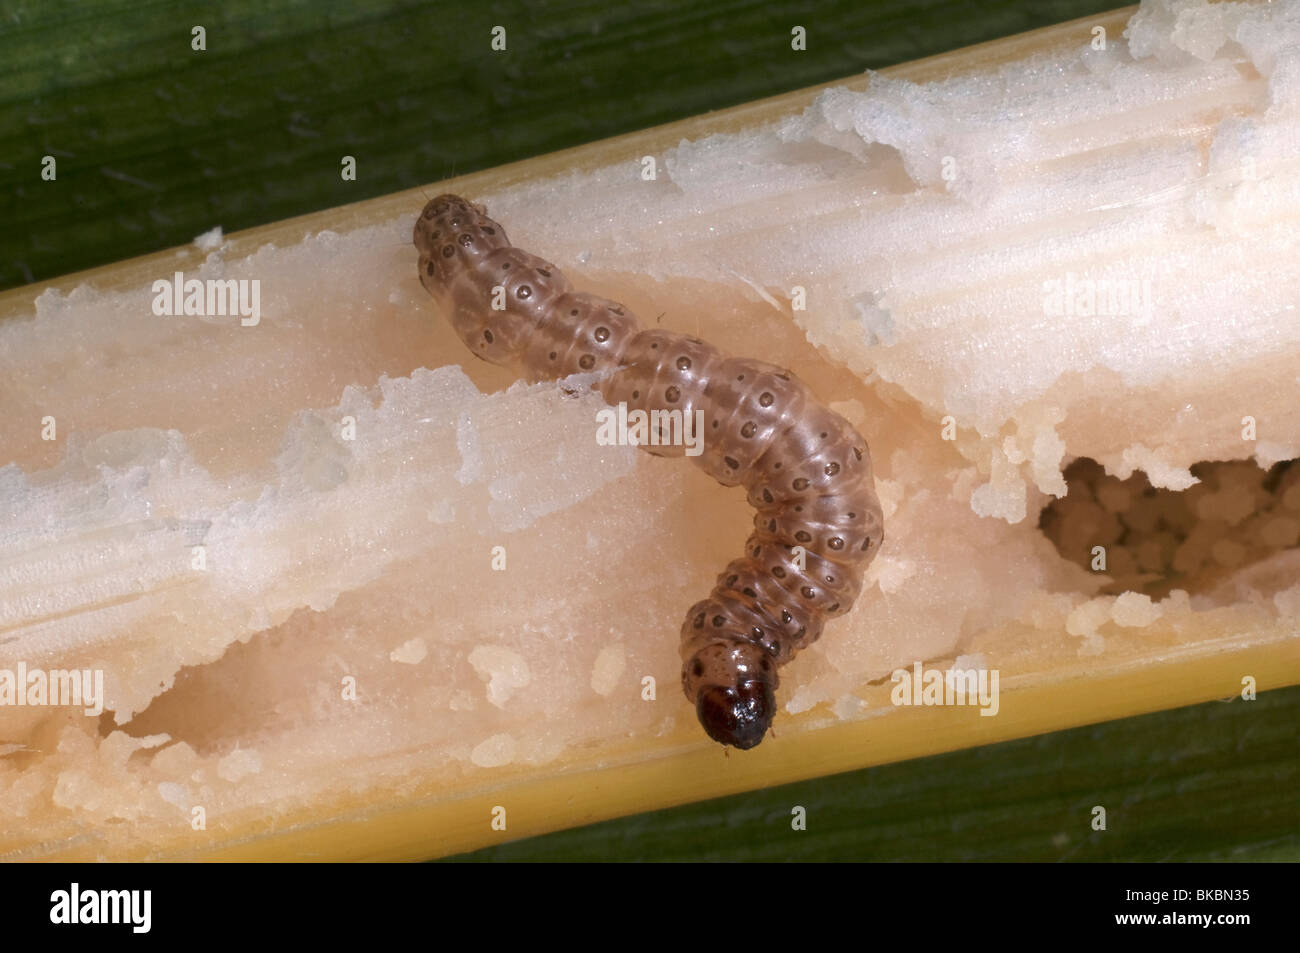 European Corn Borer (Ostrinia nubilalis), larva in maize (corn) stalk. Stock Photo